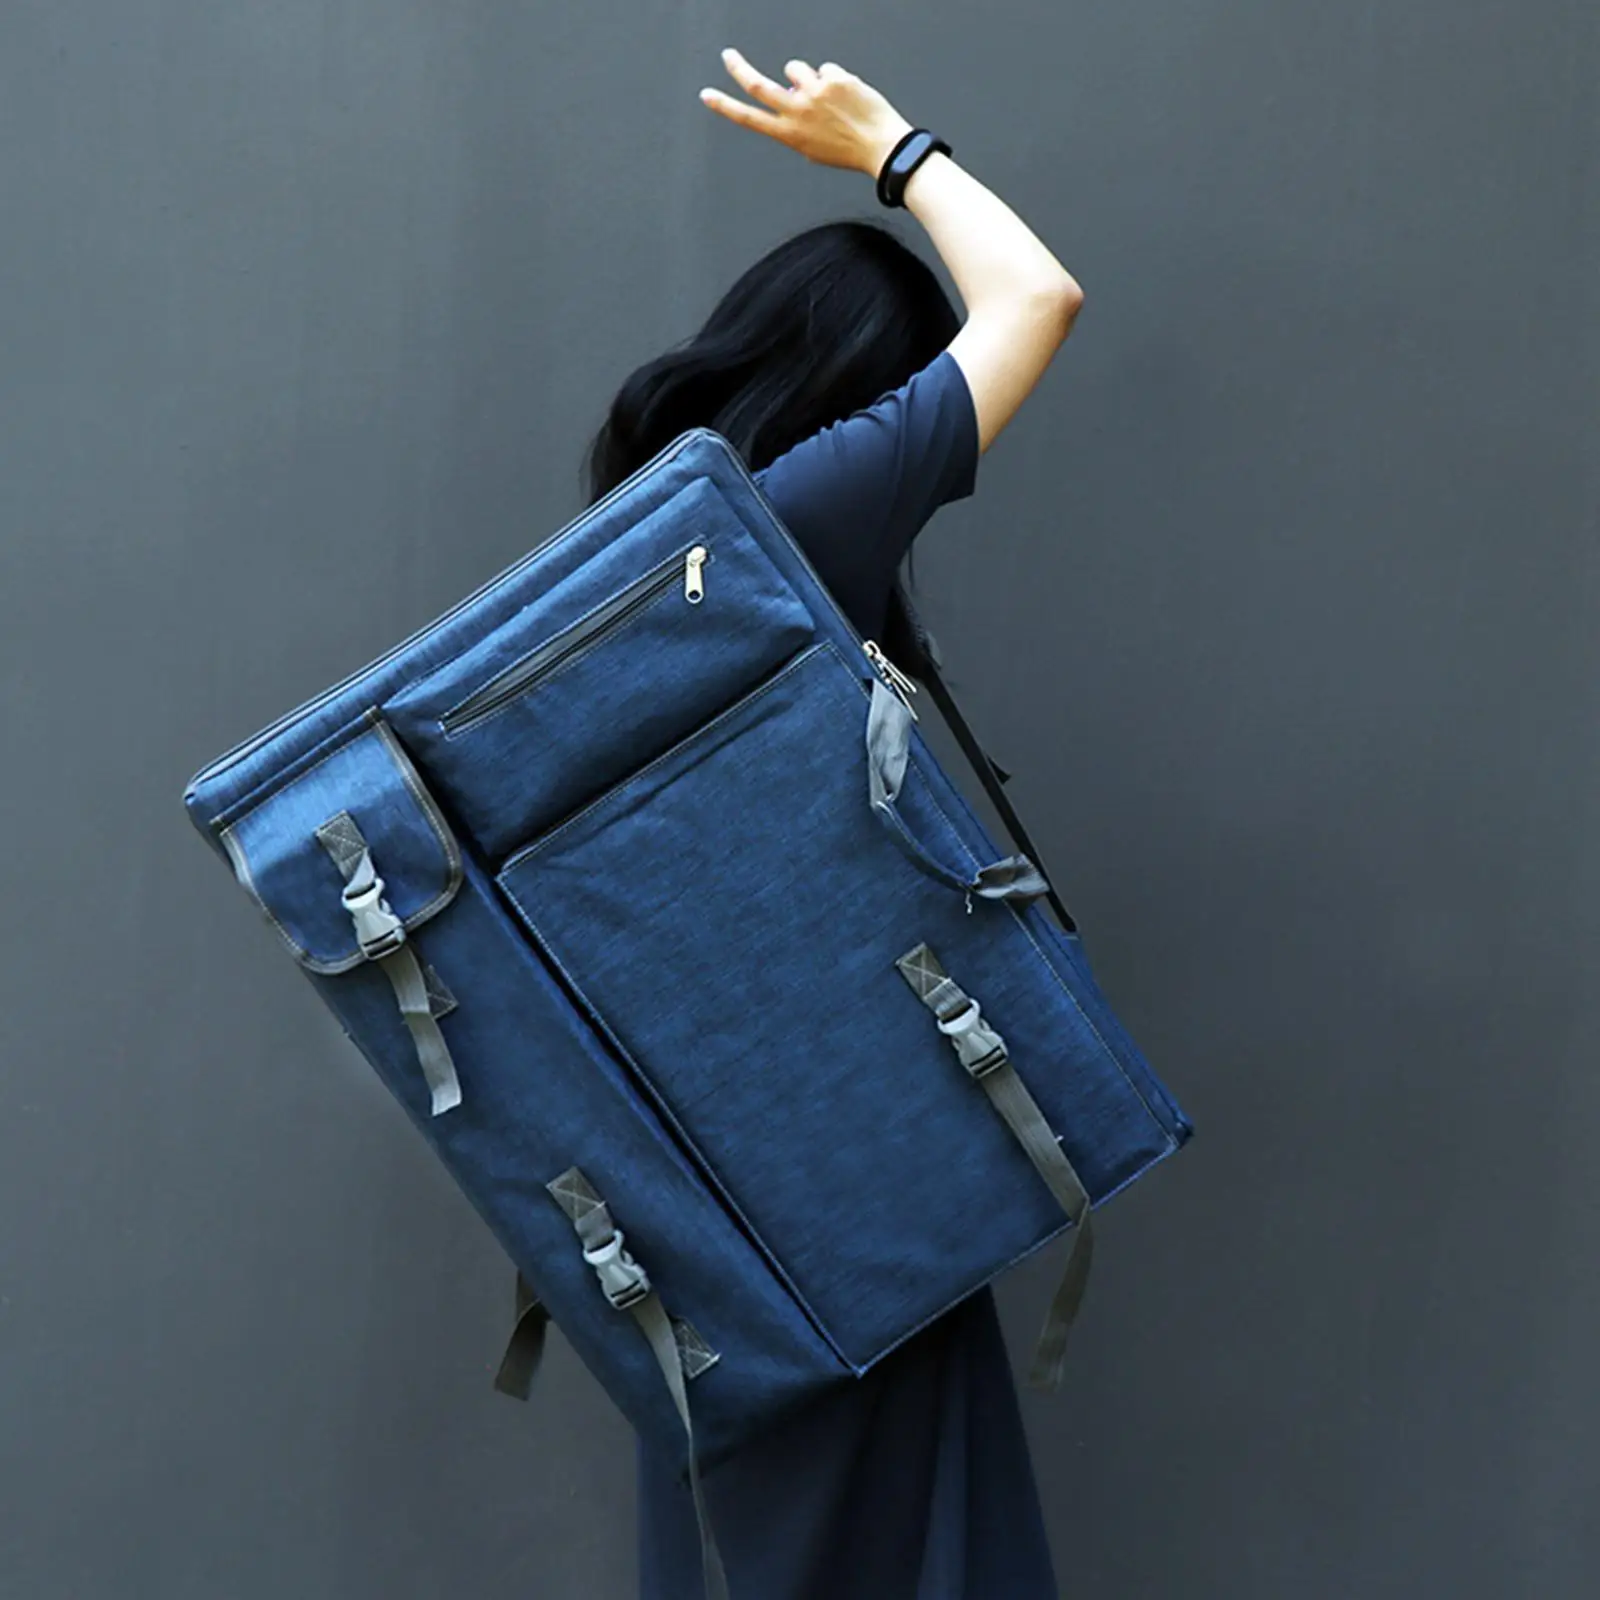 Art Portfolio Case Blue Water Resistant Breathable Adjustable Shoulder Straps Art Drawing Board Bag Painting Bag Backpack